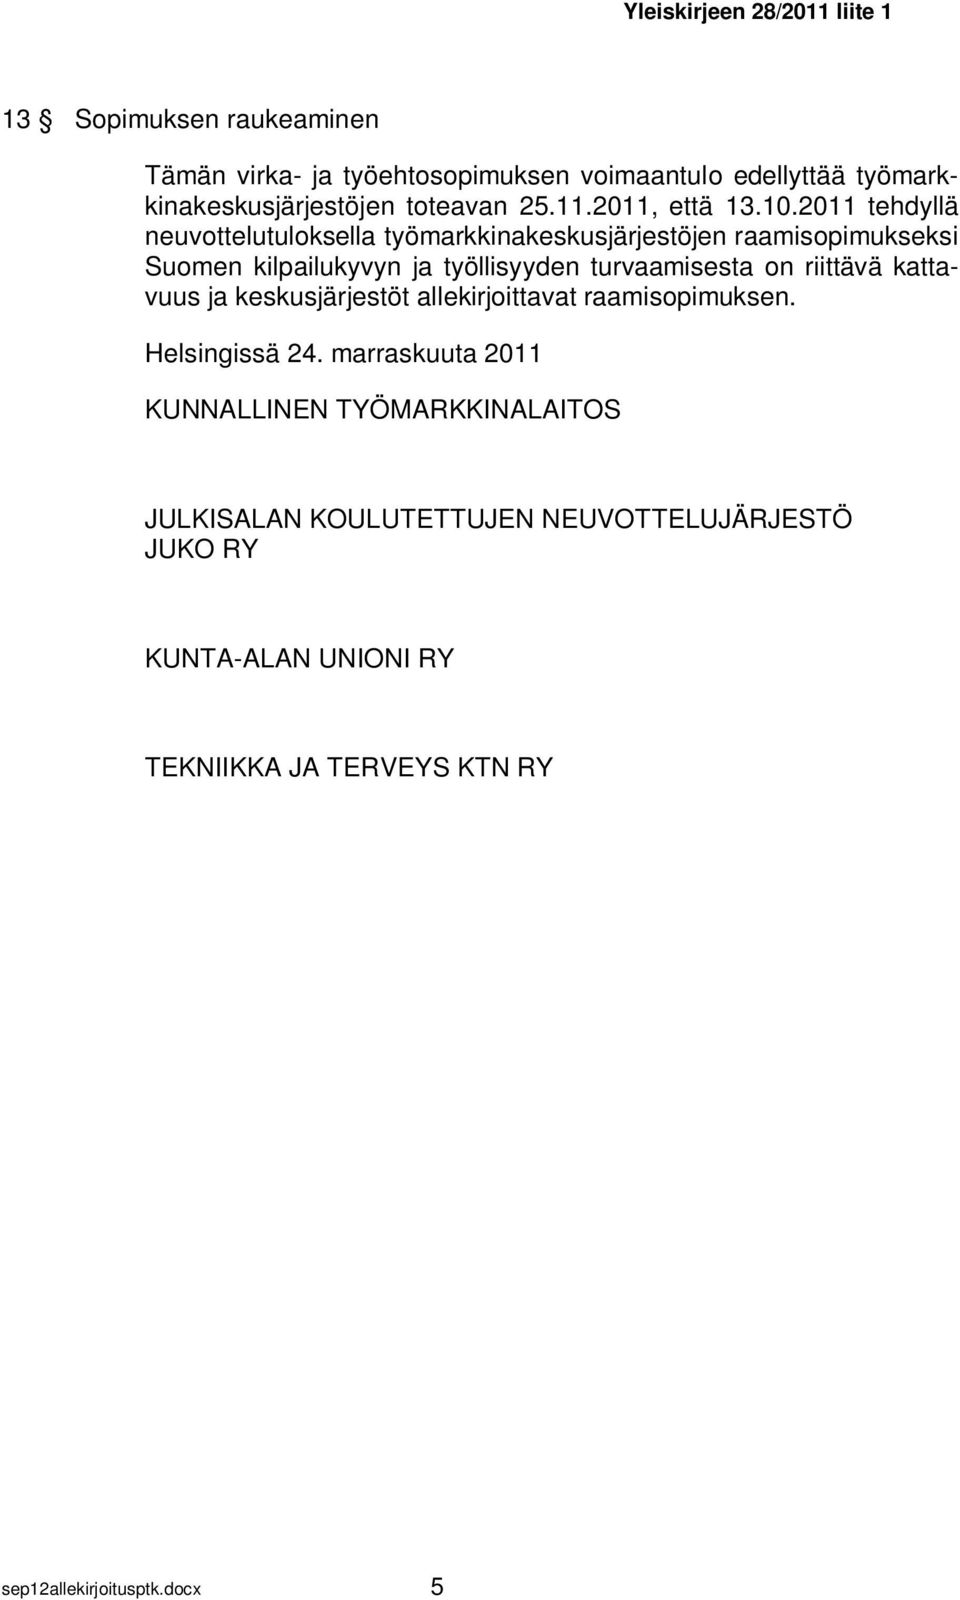 2011 tehdyllä neuvottelutuloksella työmarkkinakeskusjärjestöjen raamisopimukseksi Suomen kilpailukyvyn ja työllisyyden turvaamisesta on